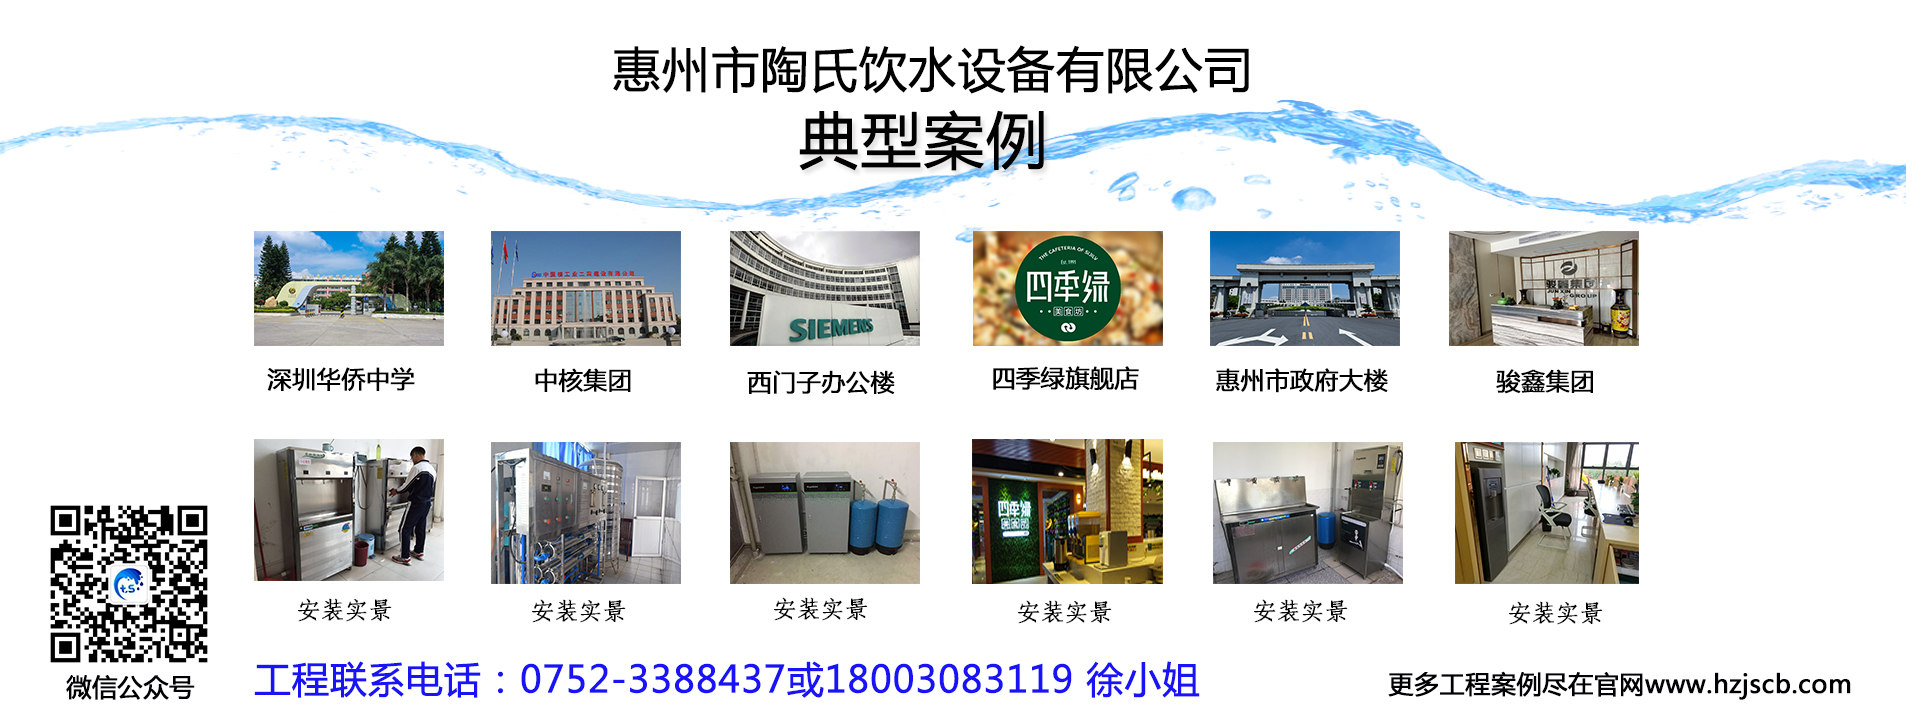 惠州工厂专用不锈钢饮水机,单台供200人使用一